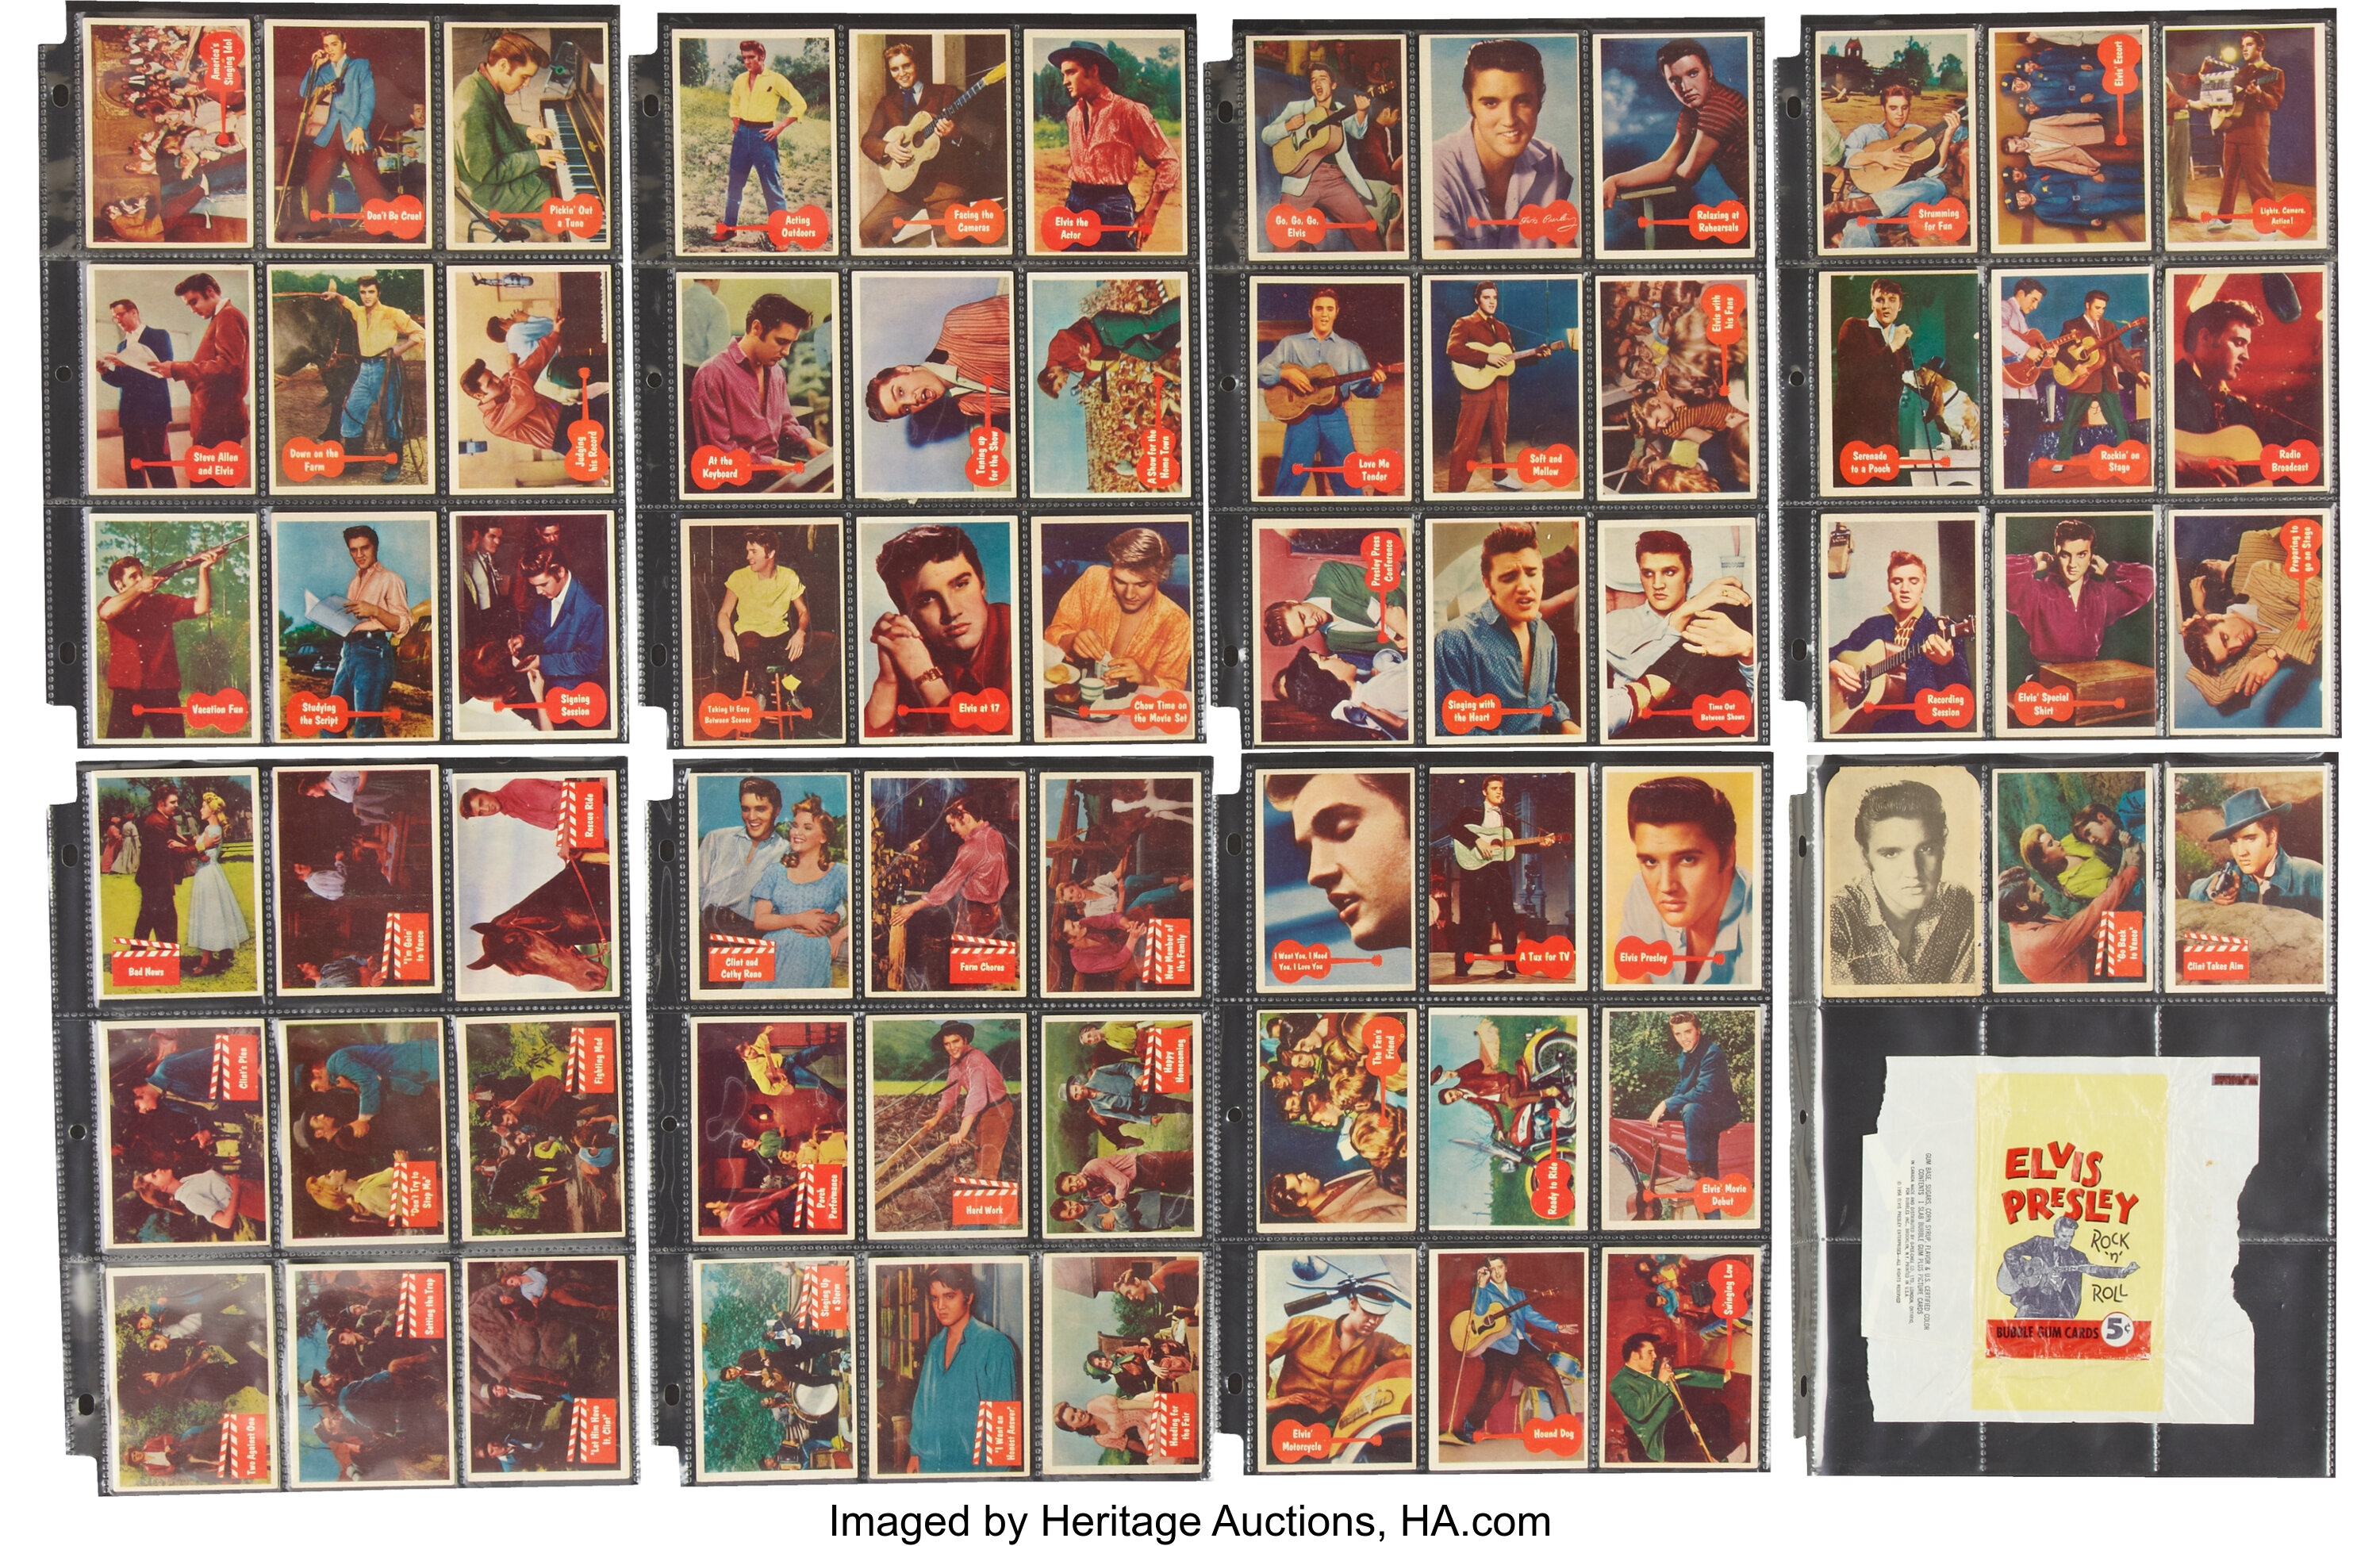 7 RARE ORIGINAL VINTAGE Elvis Presley old gum trading cards